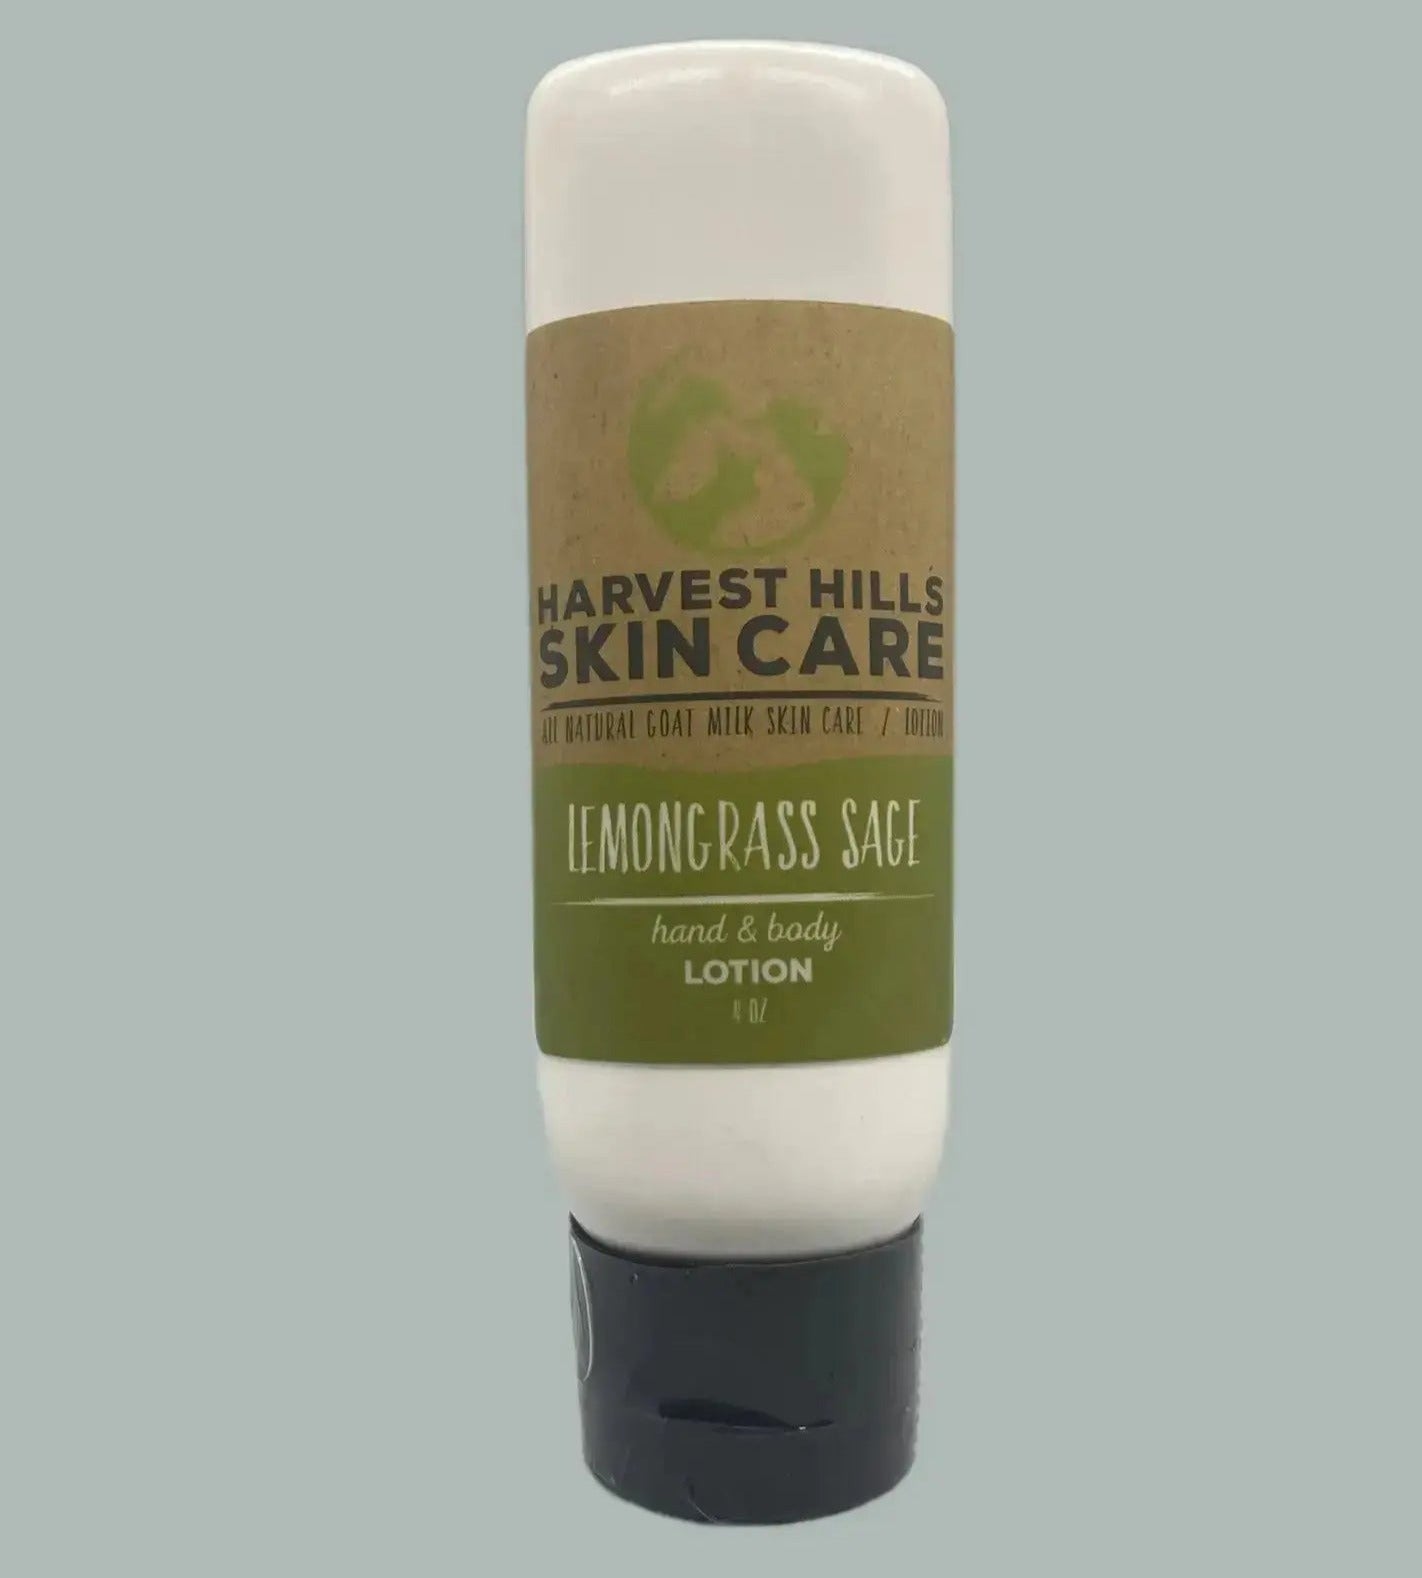 Lemongrass Sage Lotion Harvest Hills Skin Care - All Natural Goat Milk Skin Care, LLC